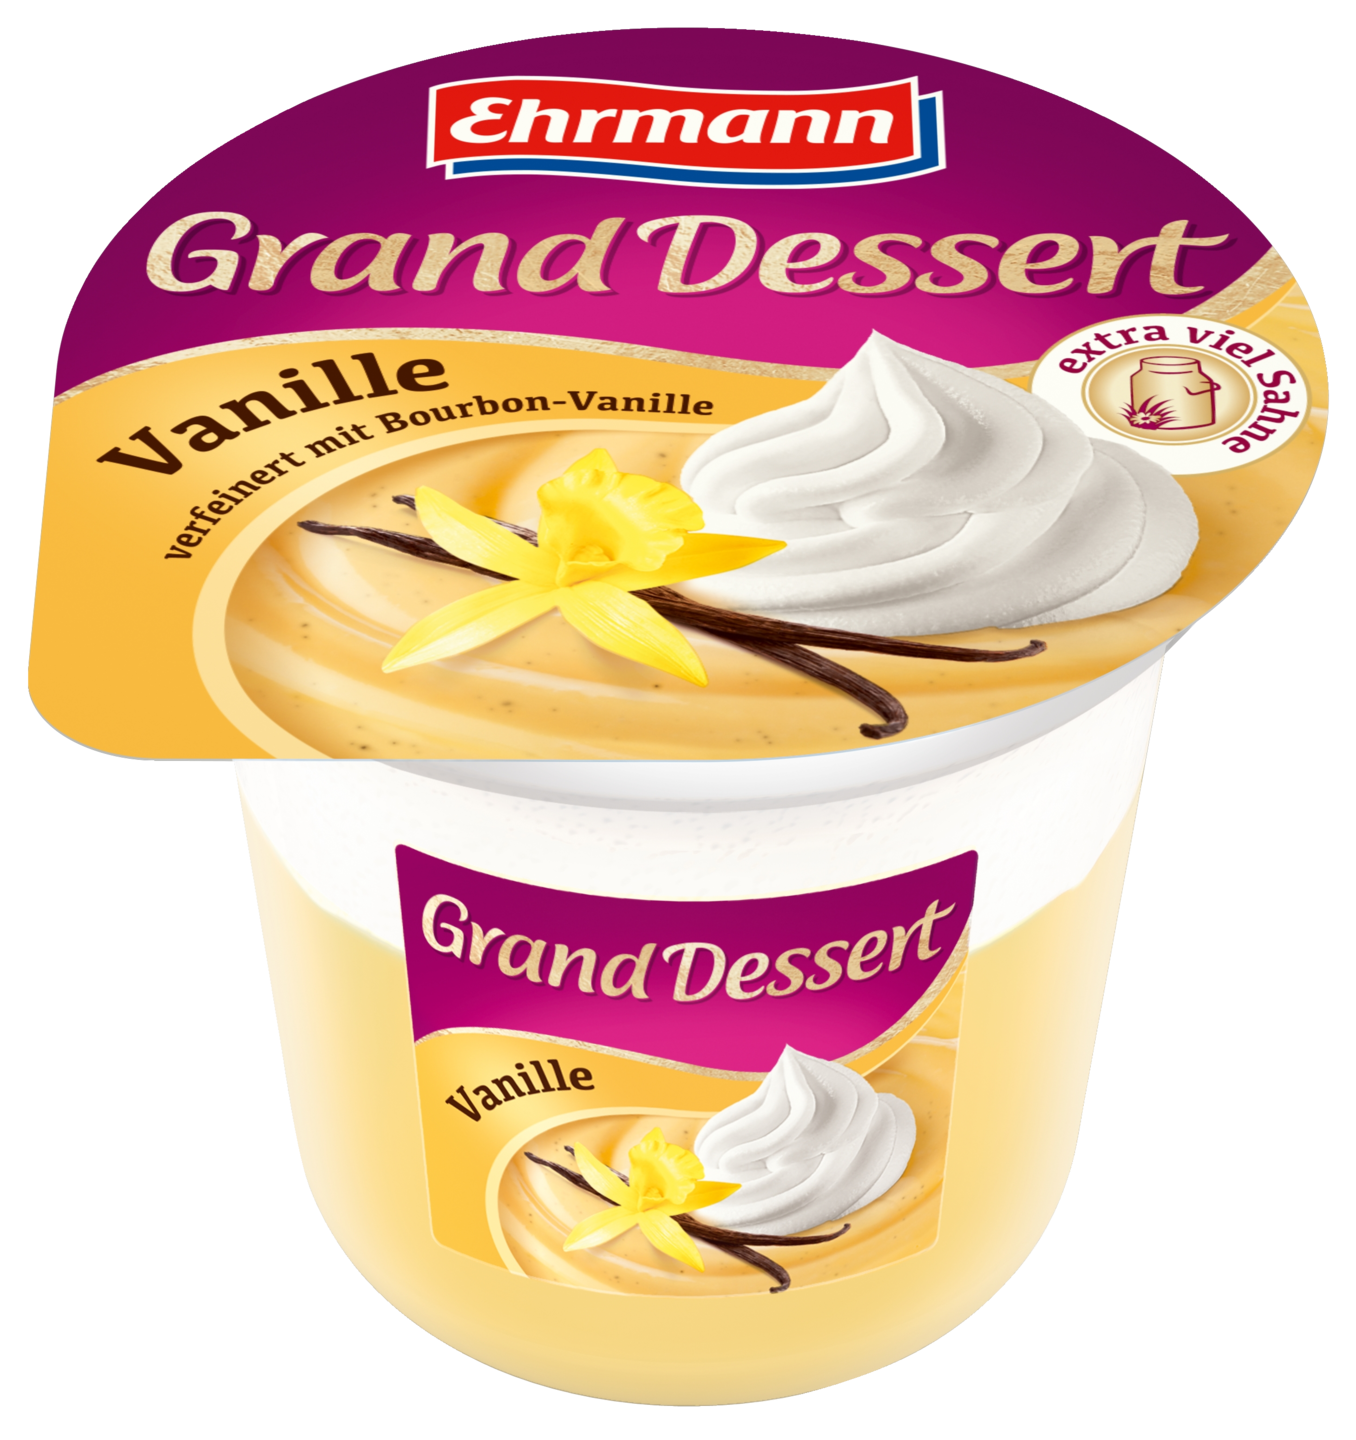 Ehrmann Grand Dessert 190g vanilja